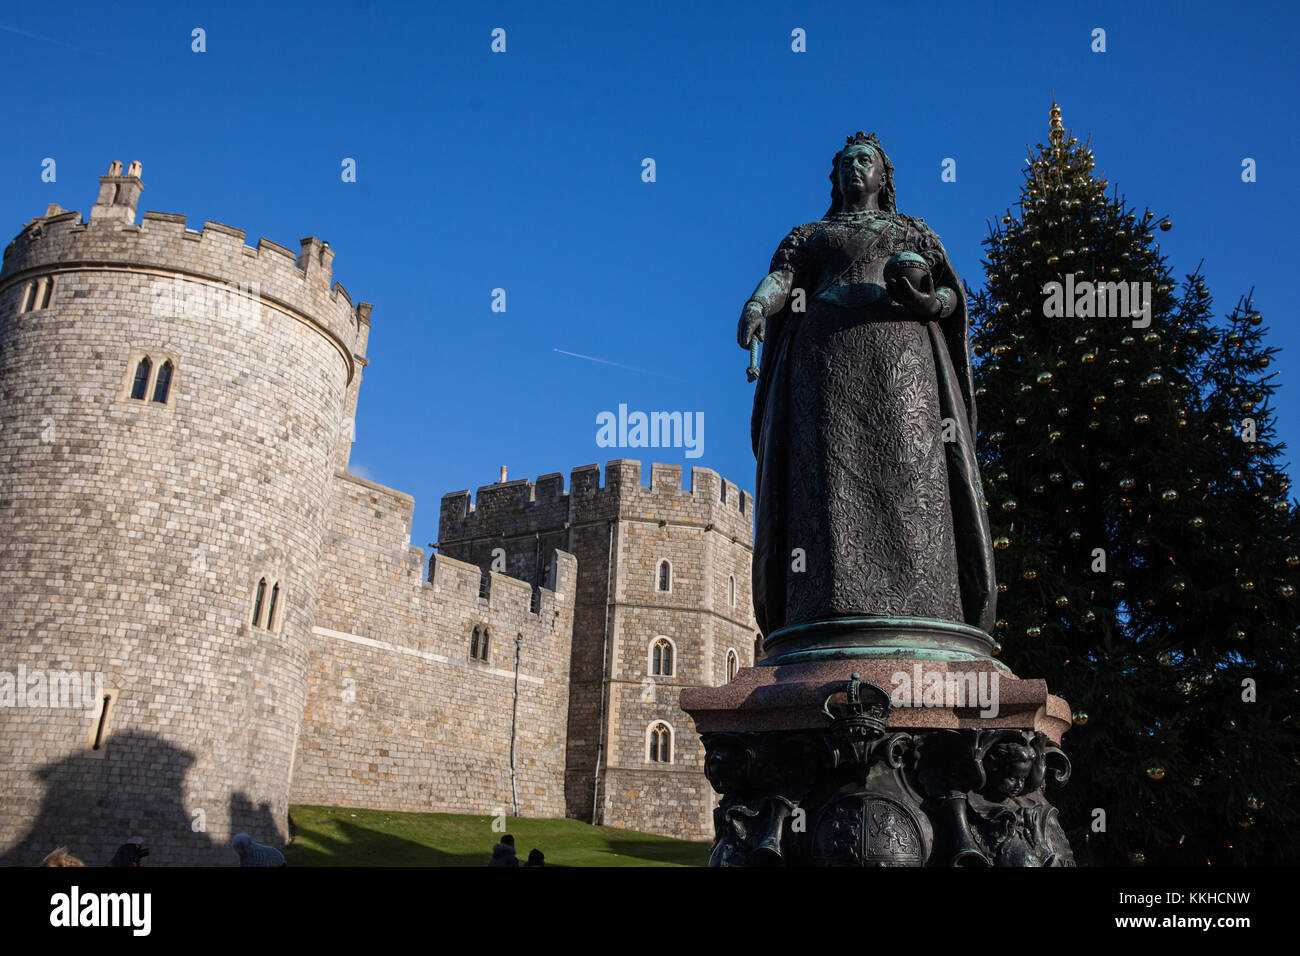 Windsor, Regno Unito. 1 dicembre, 2017. Il castello di Windsor e la statua della regina Victoria. Credito: mark kerrison/alamy live news Foto Stock